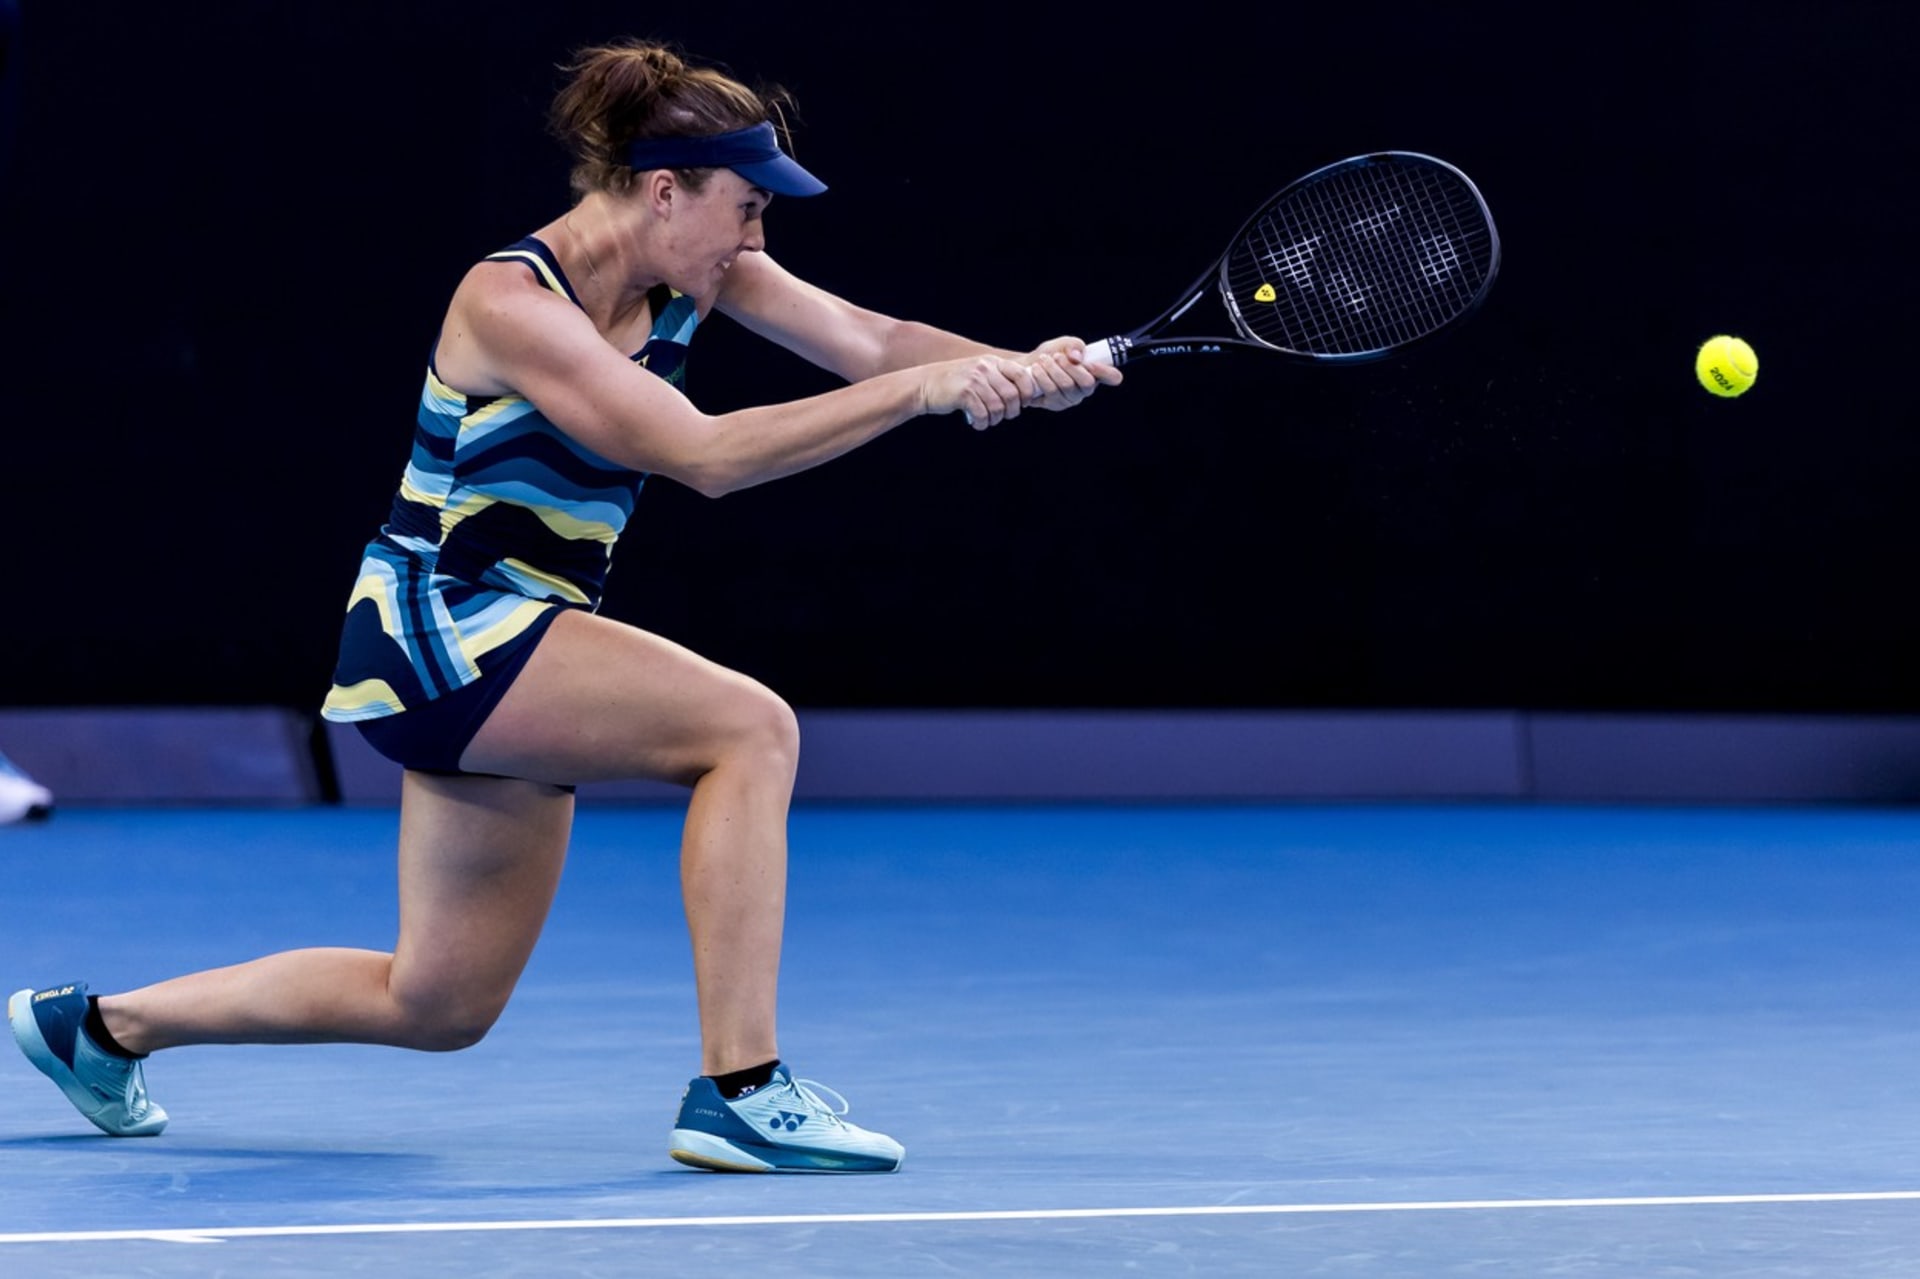 Nosková senzačně porazila Šwiatekovou a je na Australian Open v osmifinále